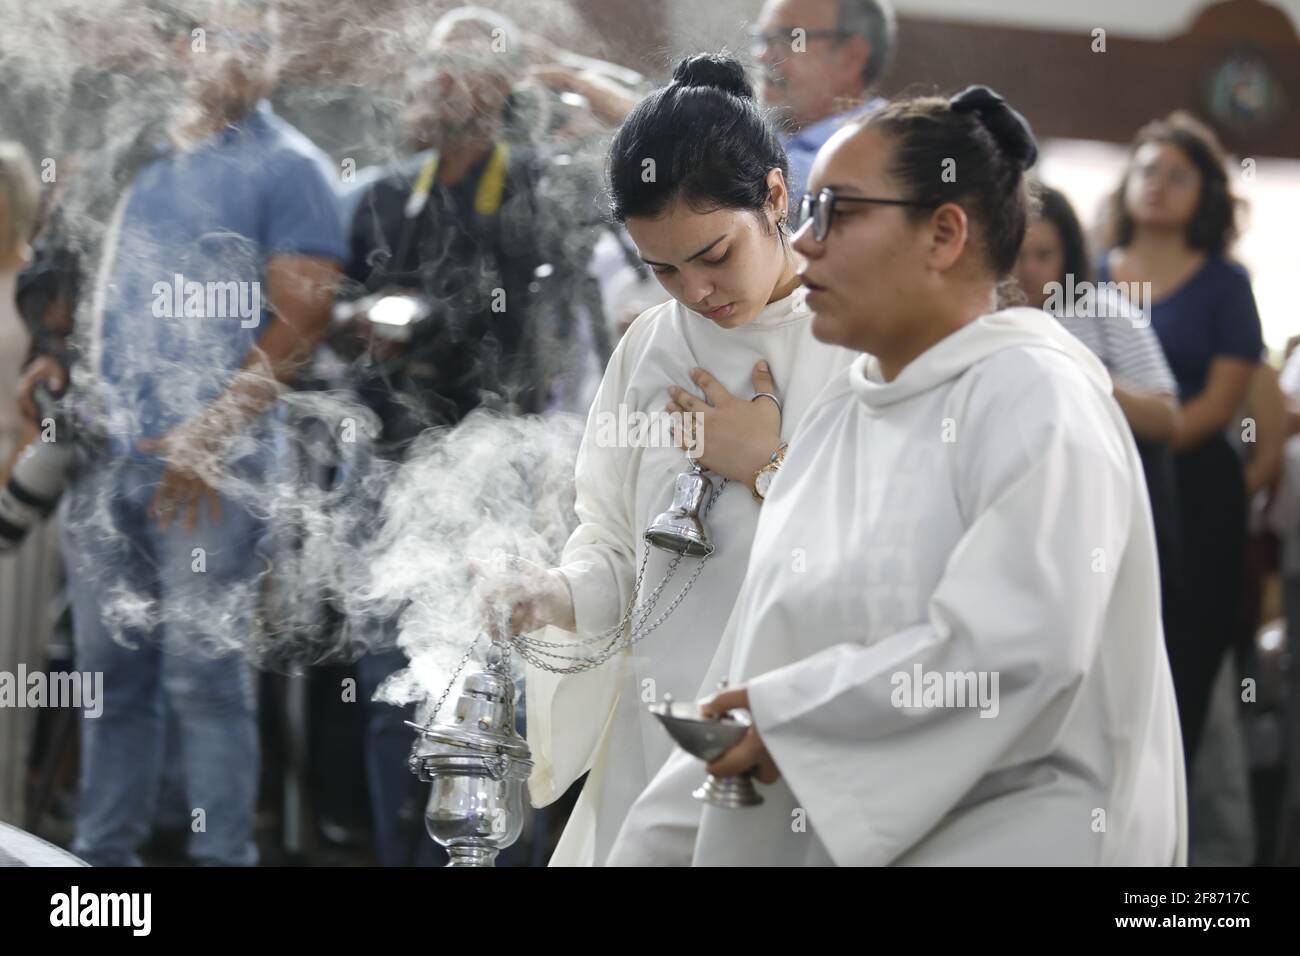 salvador, bahia / brasile - 13 agosto 2019: Messa solenne in onore di Santa Dulce dos Pobres, nel santuario religioso della città di Salvador. L Foto Stock